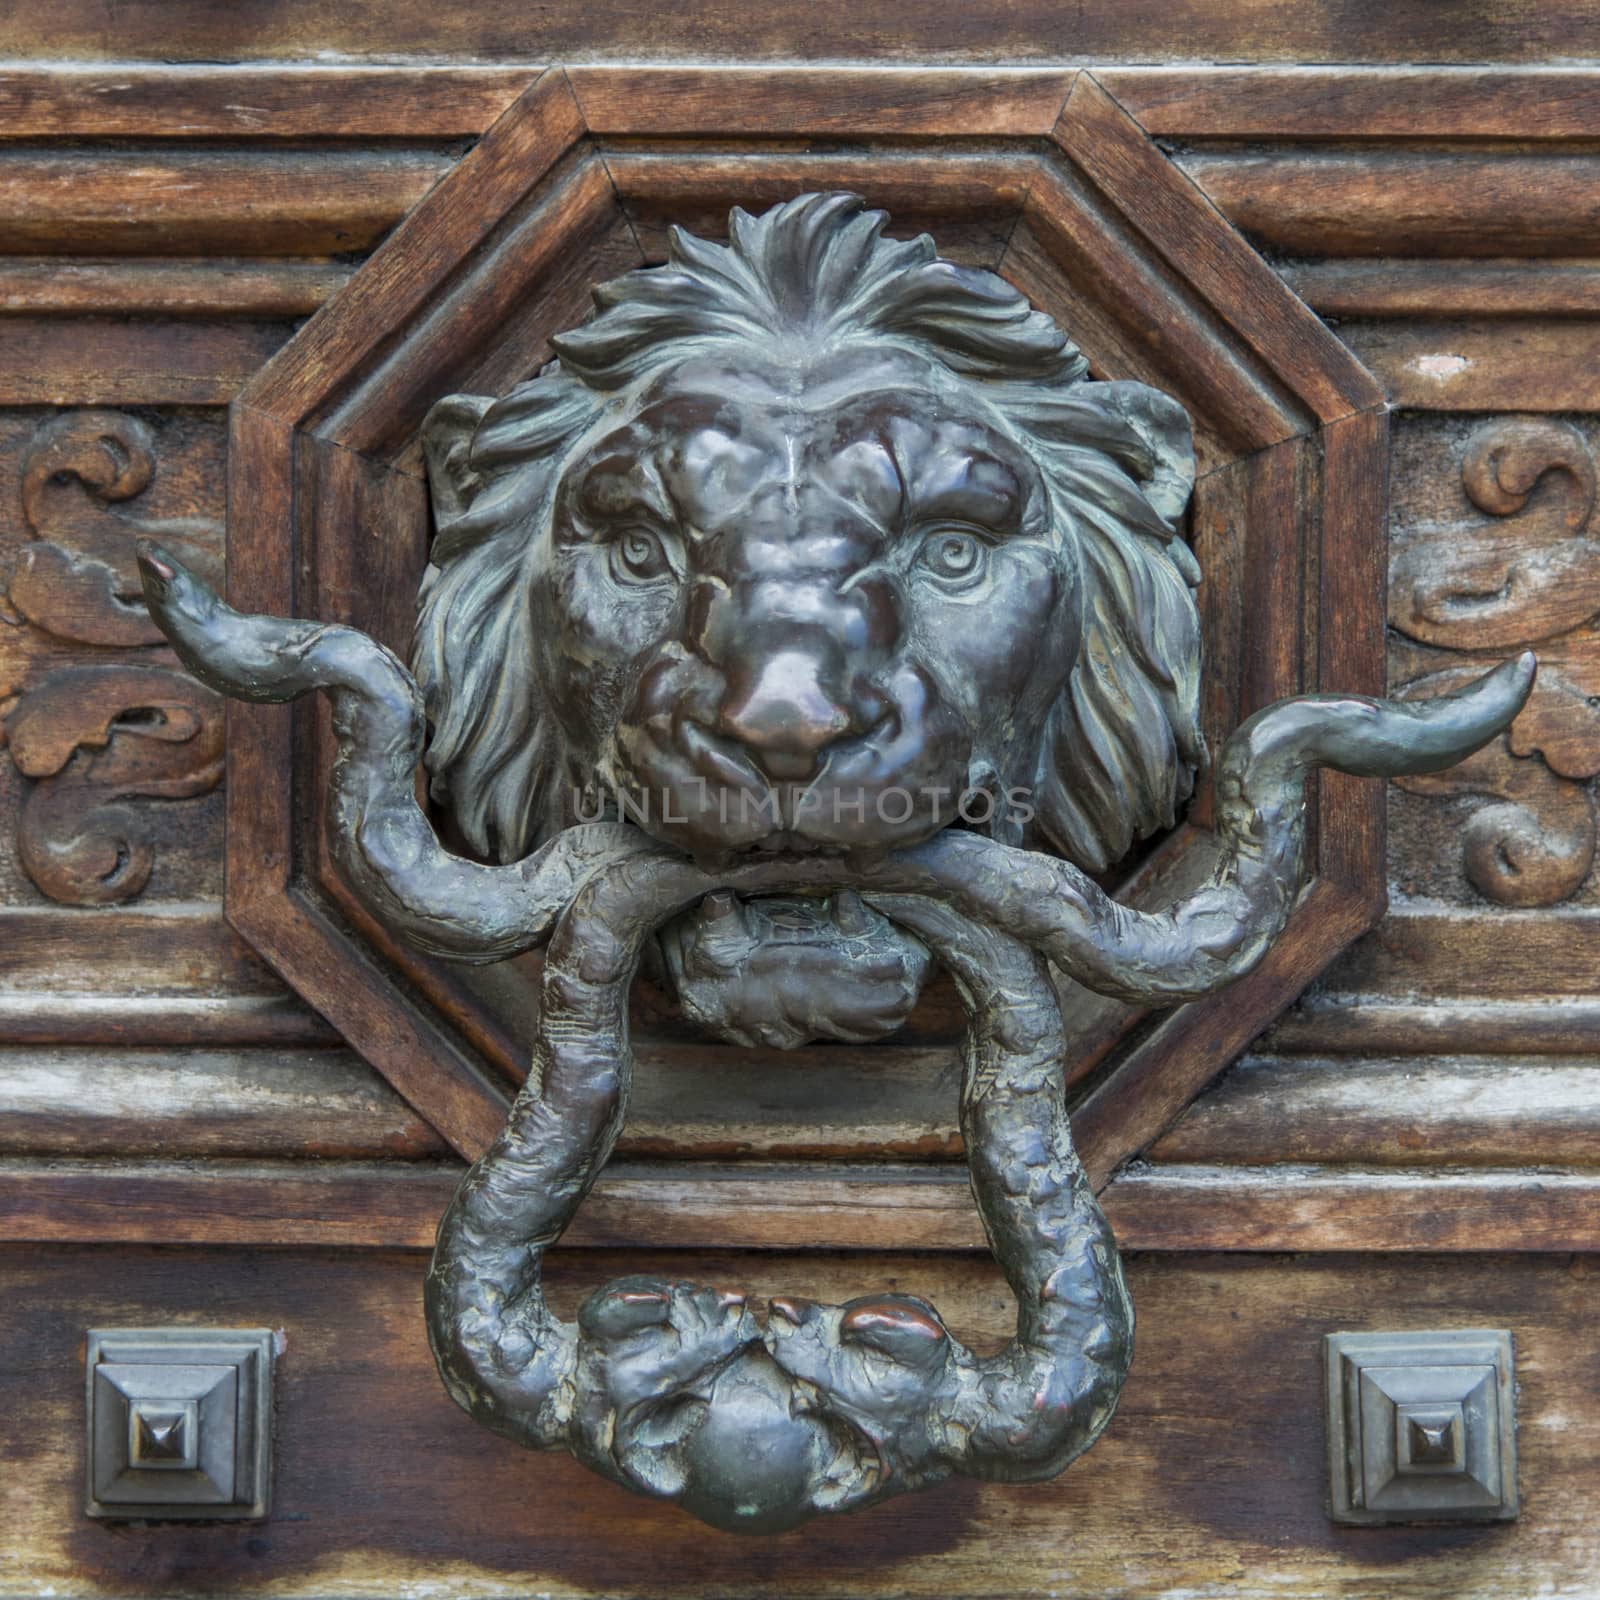 Baroque style lion door knob on a wooden door.